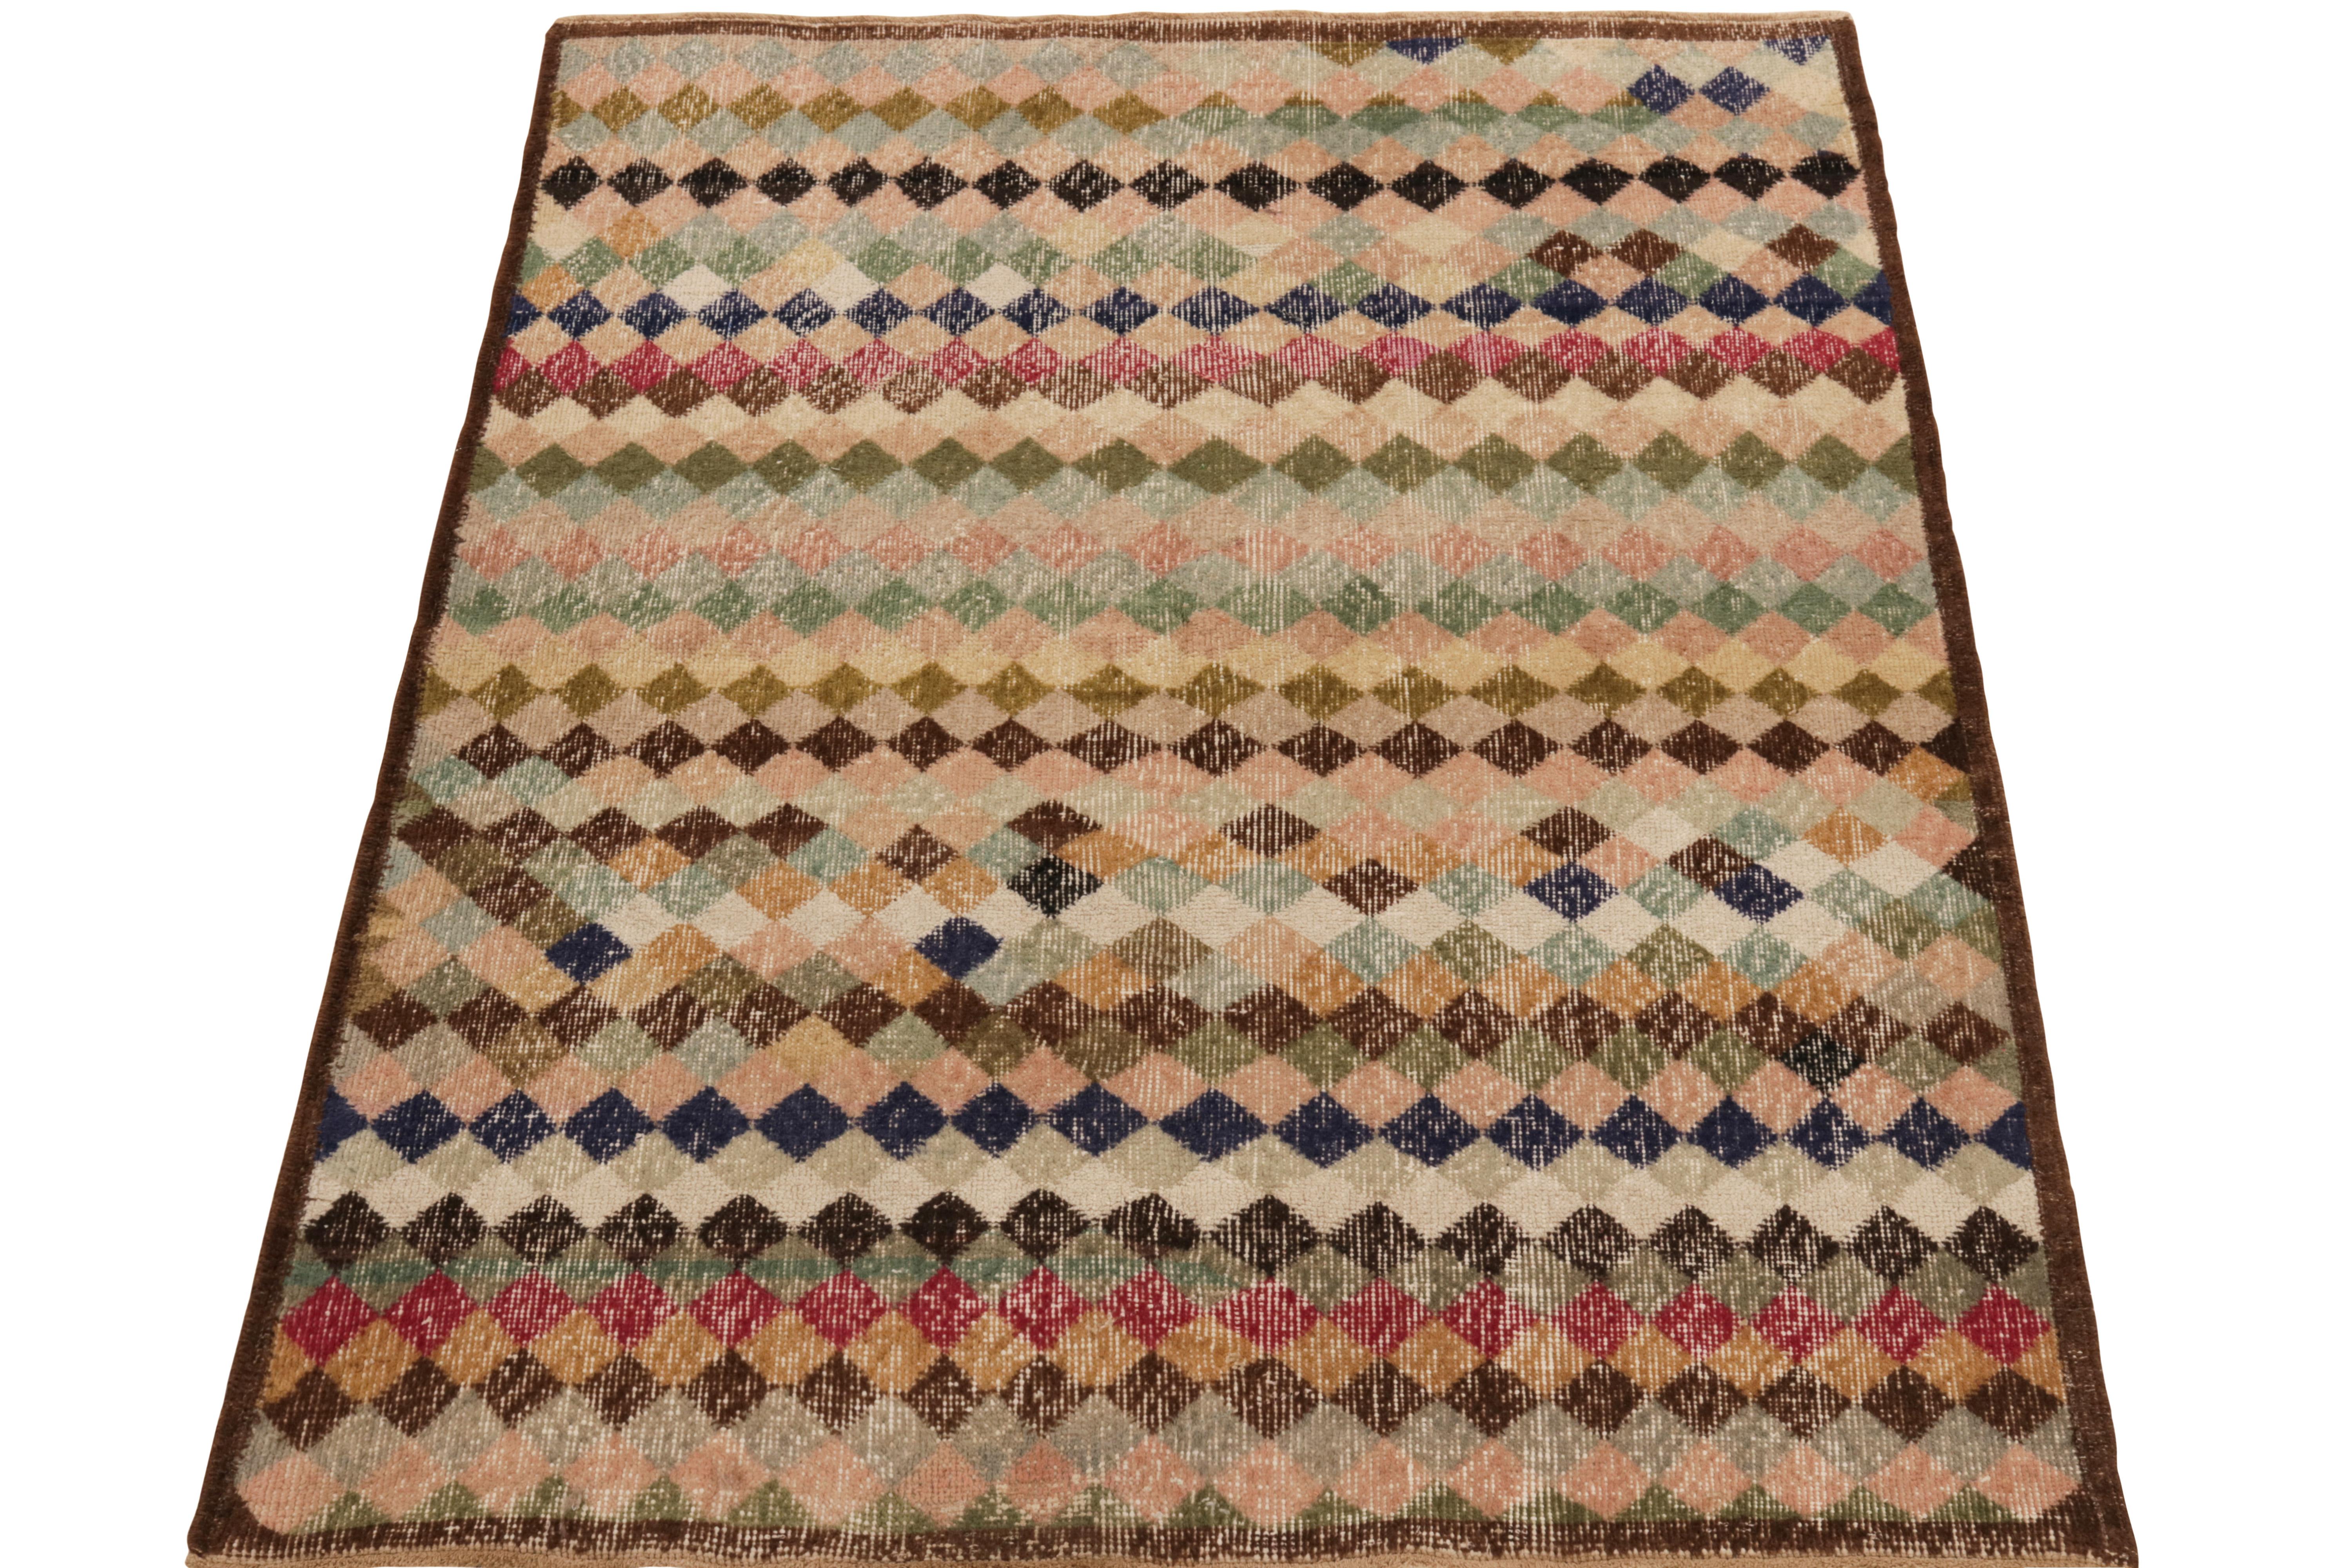 Dieser Teppich aus unserer Pasha-Kollektion aus der Mitte des Jahrhunderts stammt aus den 1960er Jahren und ist das Werk eines kühnen Designers aus der Türkei. 

Dieses handgeknüpfte Stück aus Wolle im Format 4x5 zeigt ein schillerndes